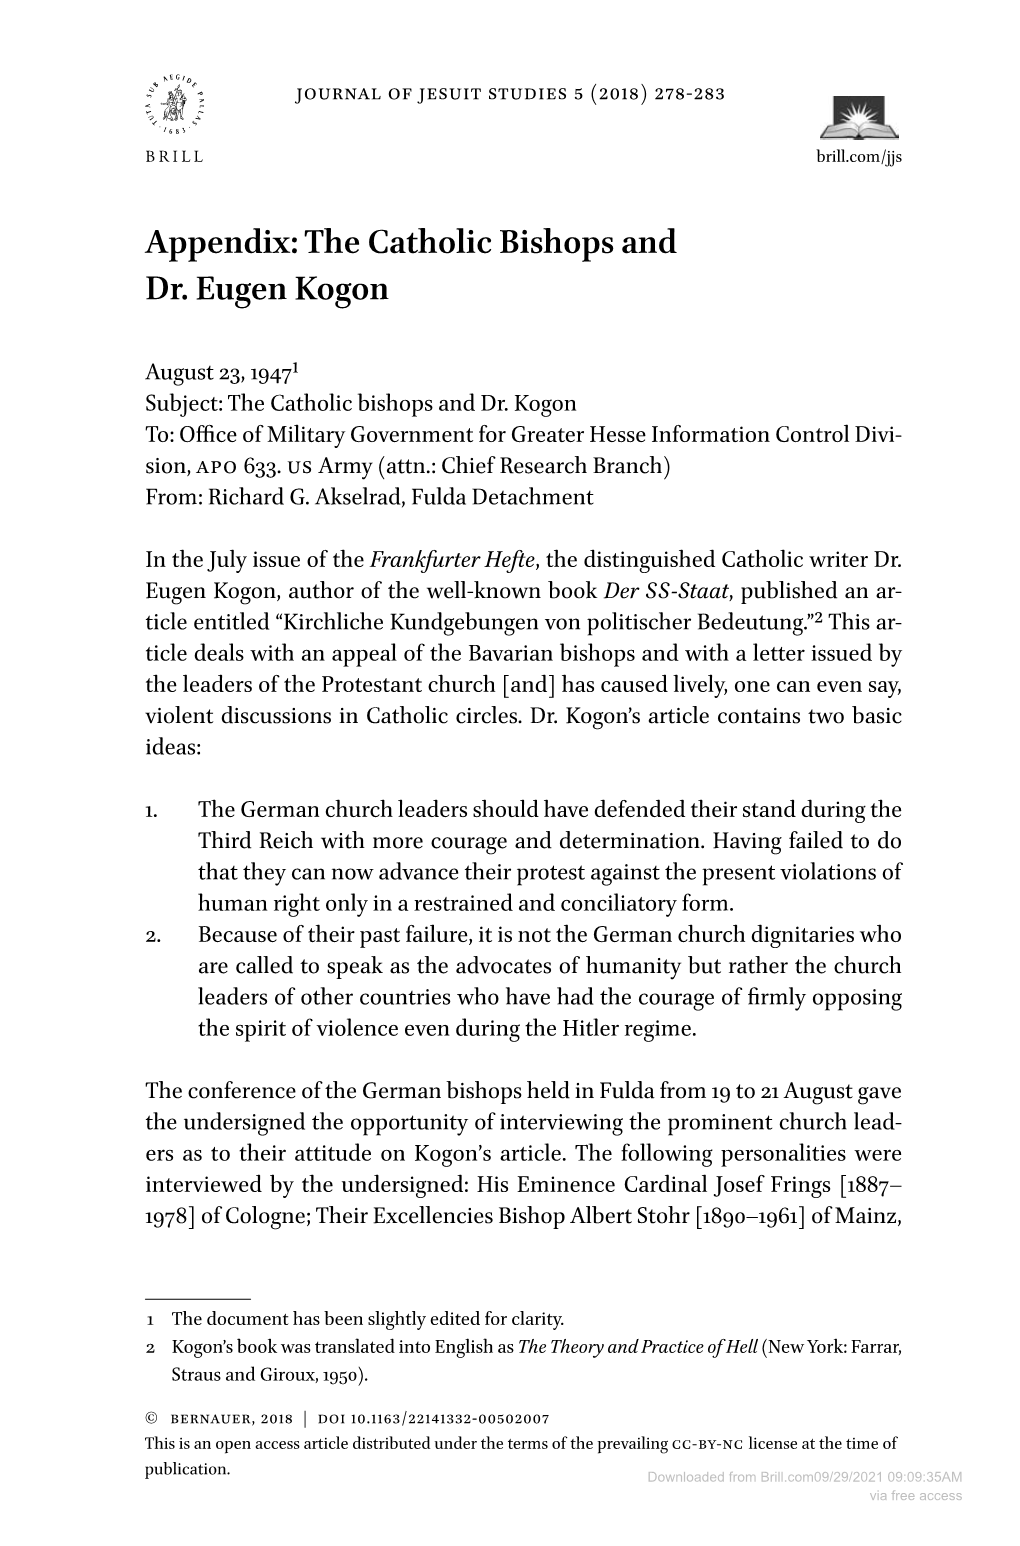 Appendix: the Catholic Bishops and Dr. Eugen Kogon